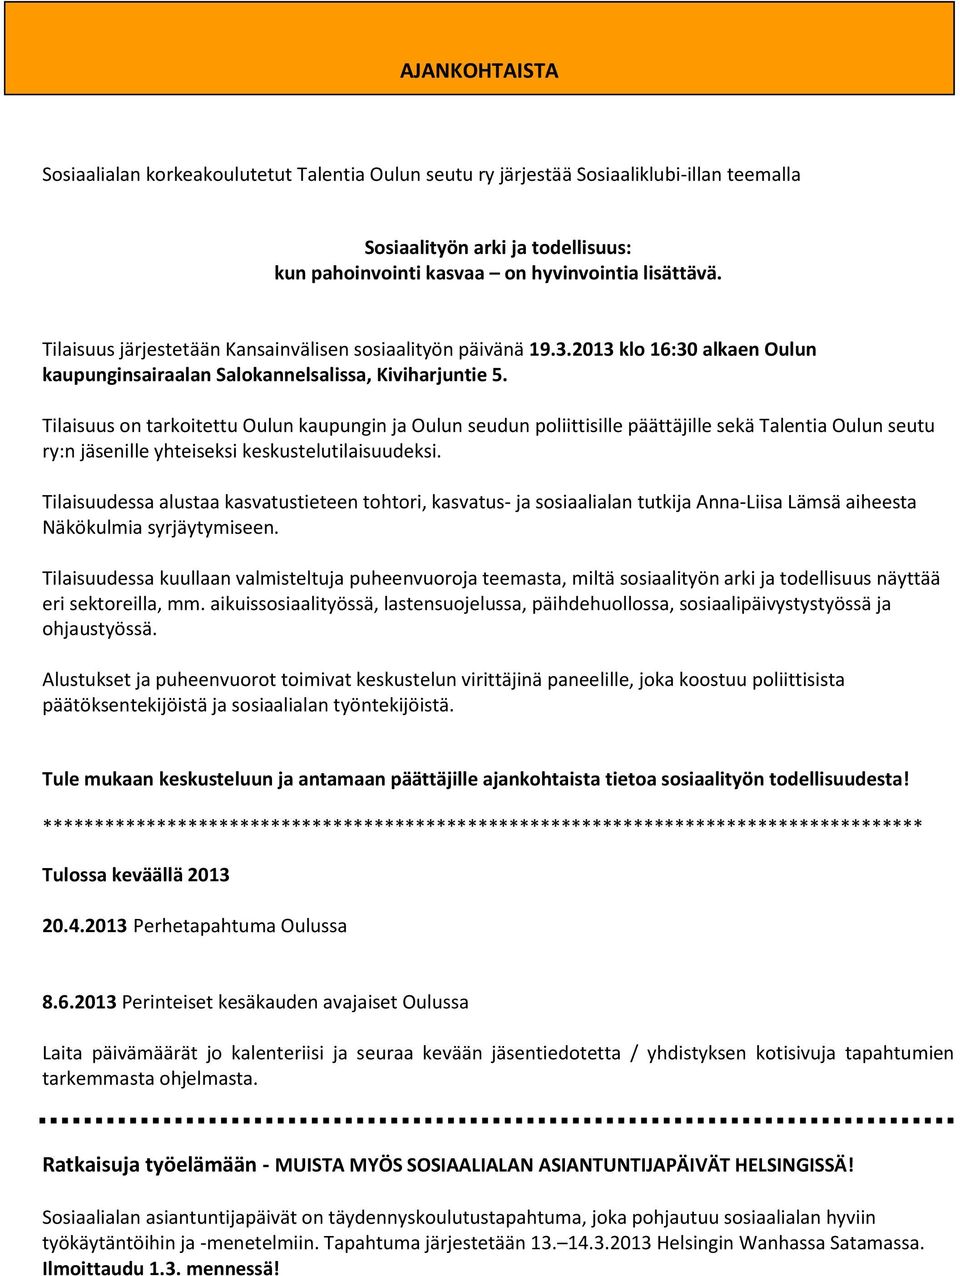 Tilaisuus on tarkoitettu Oulun kaupungin ja Oulun seudun poliittisille päättäjille sekä Talentia Oulun seutu ry:n jäsenille yhteiseksi keskustelutilaisuudeksi.